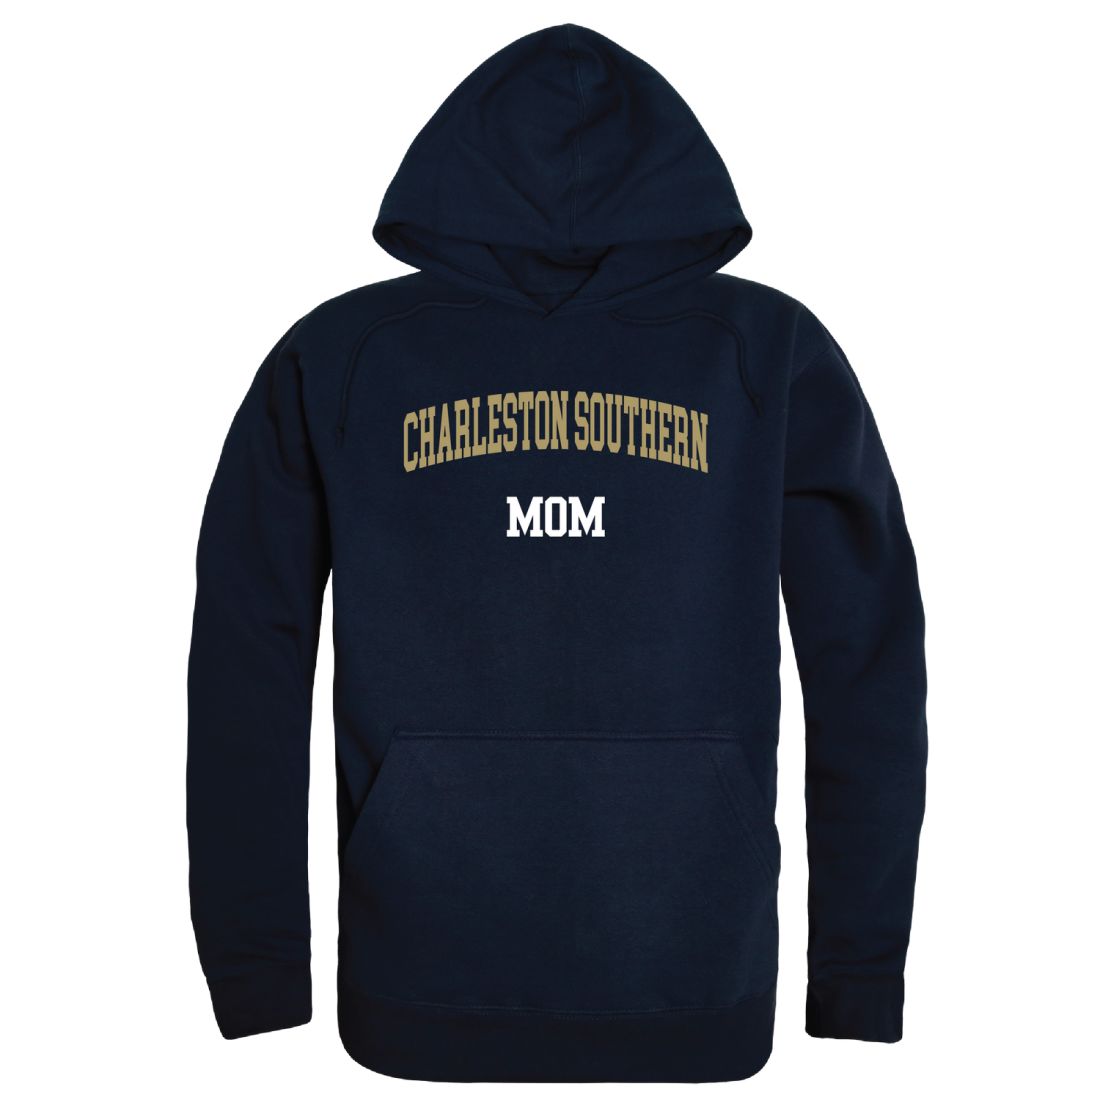 Charleston Southern University Buccanneers Mom Fleece Hoodie Sweatshirts